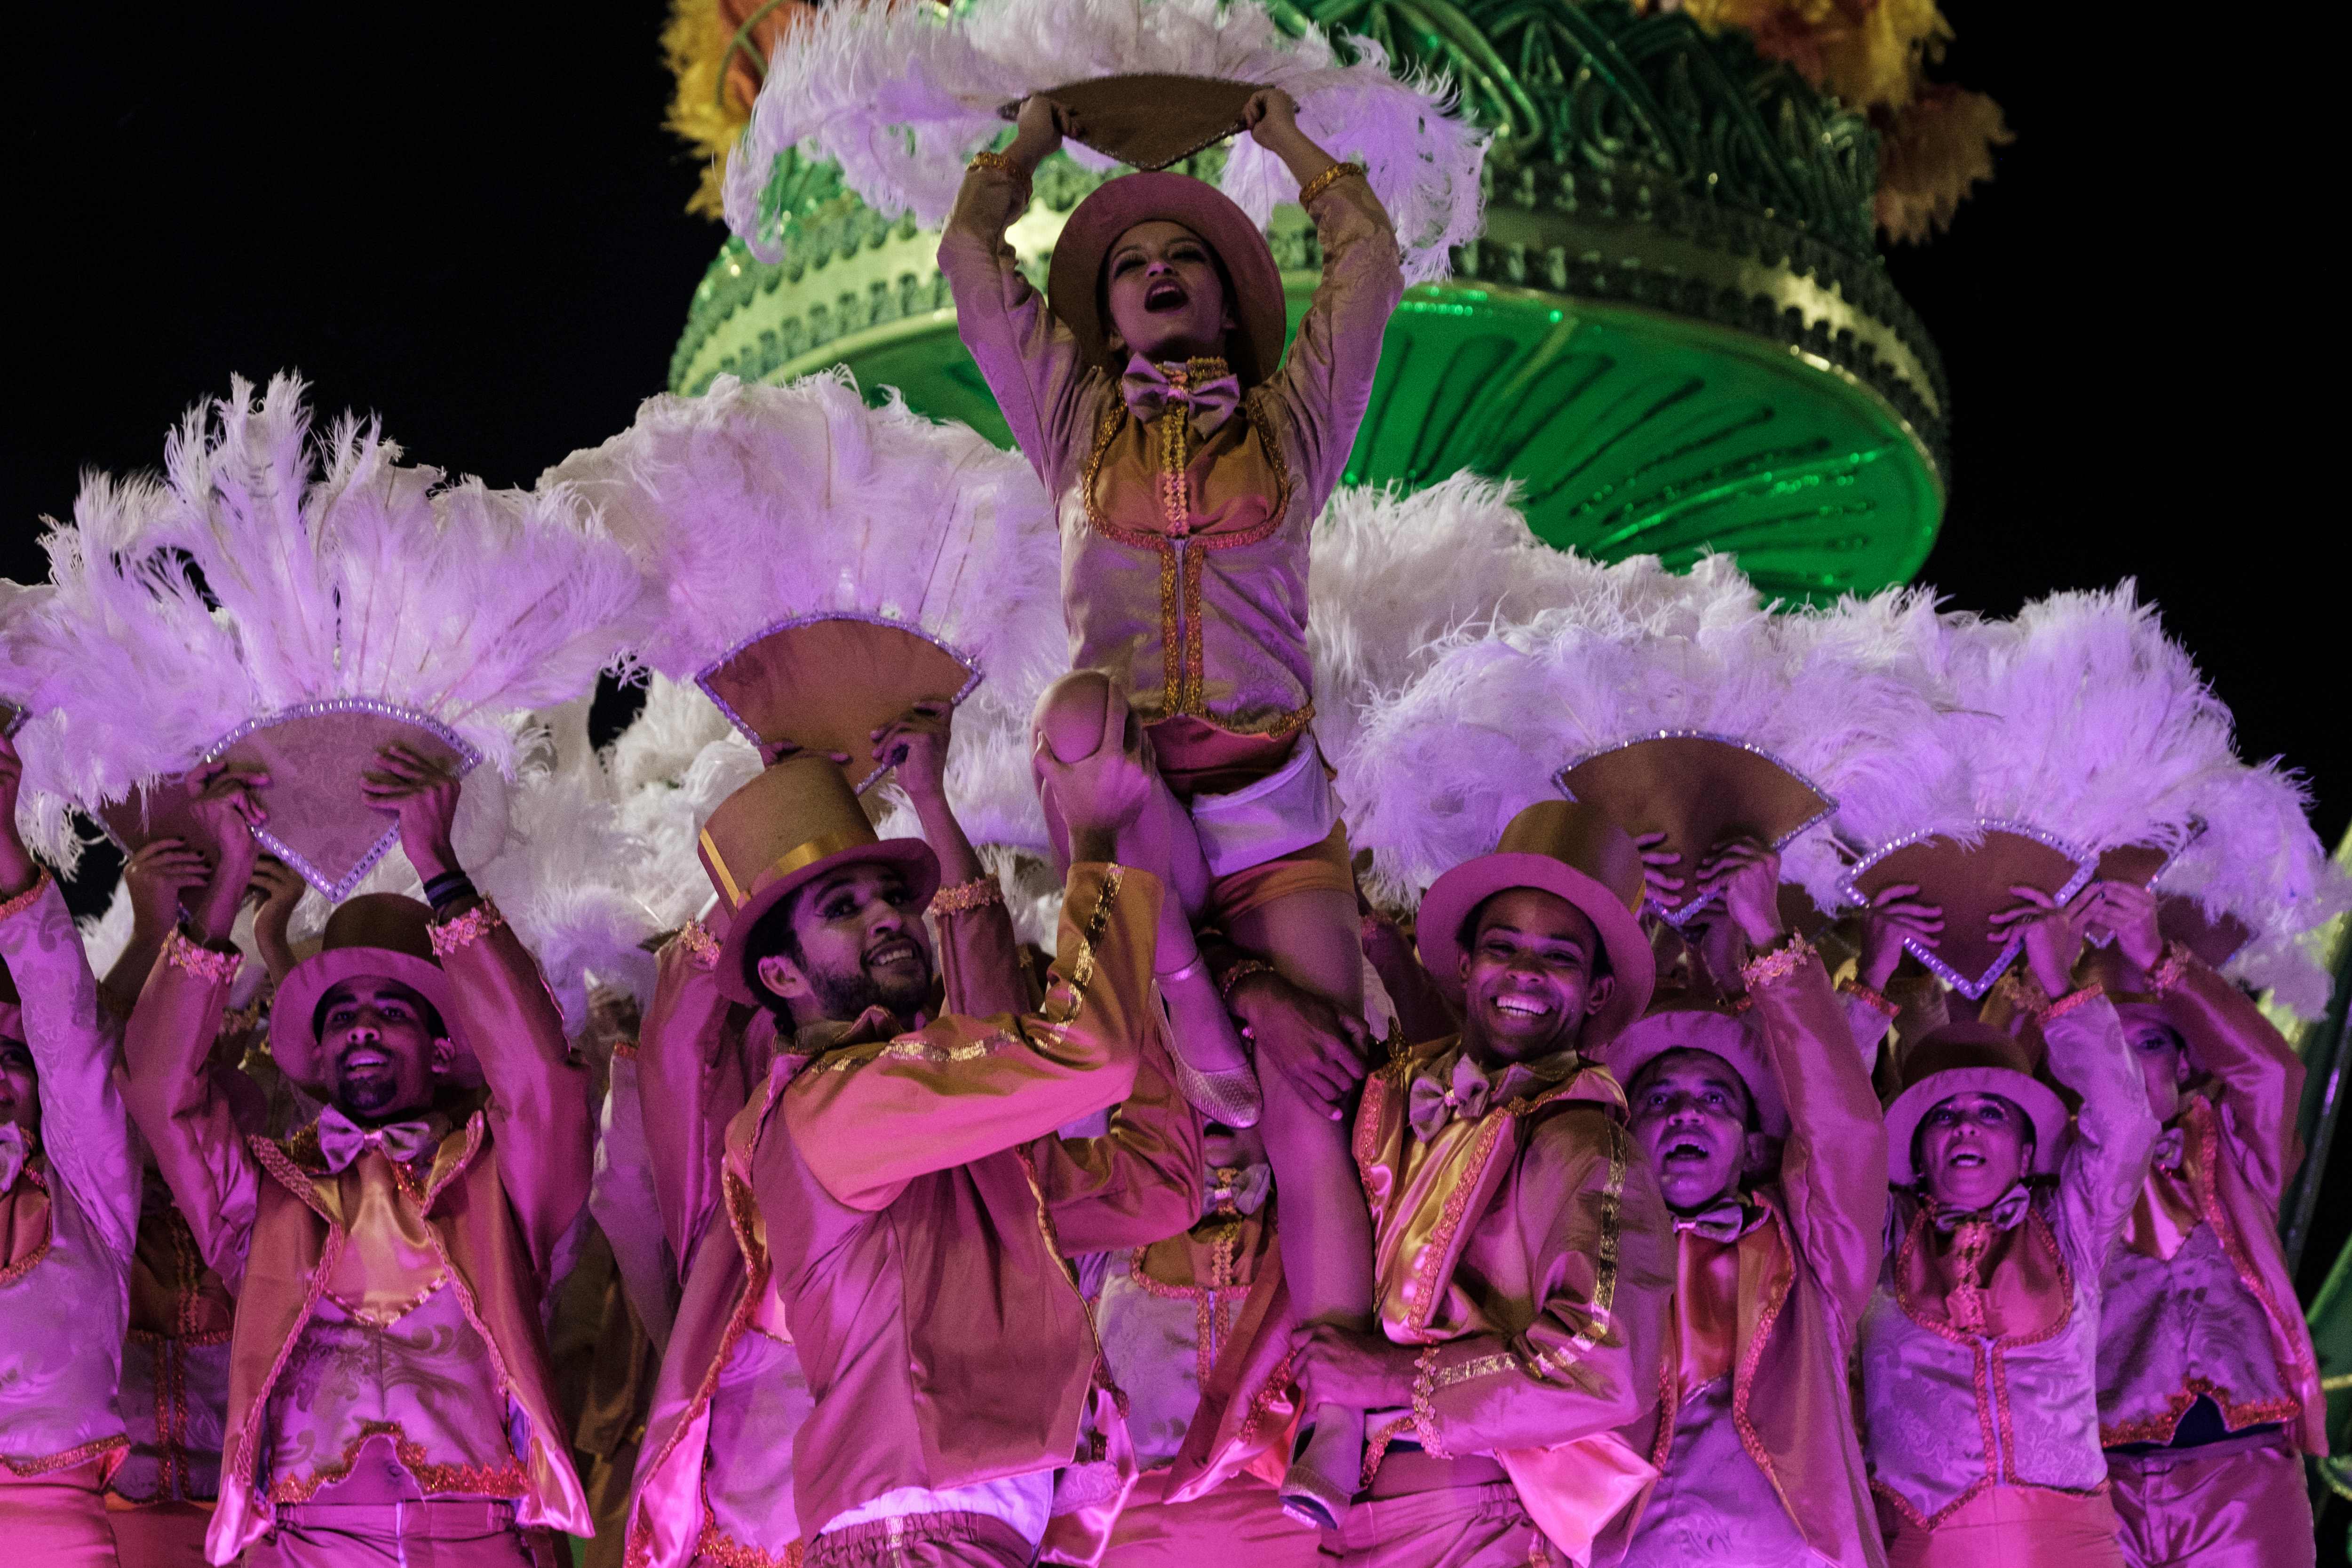 عروض فنية فى الكرنفال الشعبى لاحياء رقصة السامبا فى البرازيل